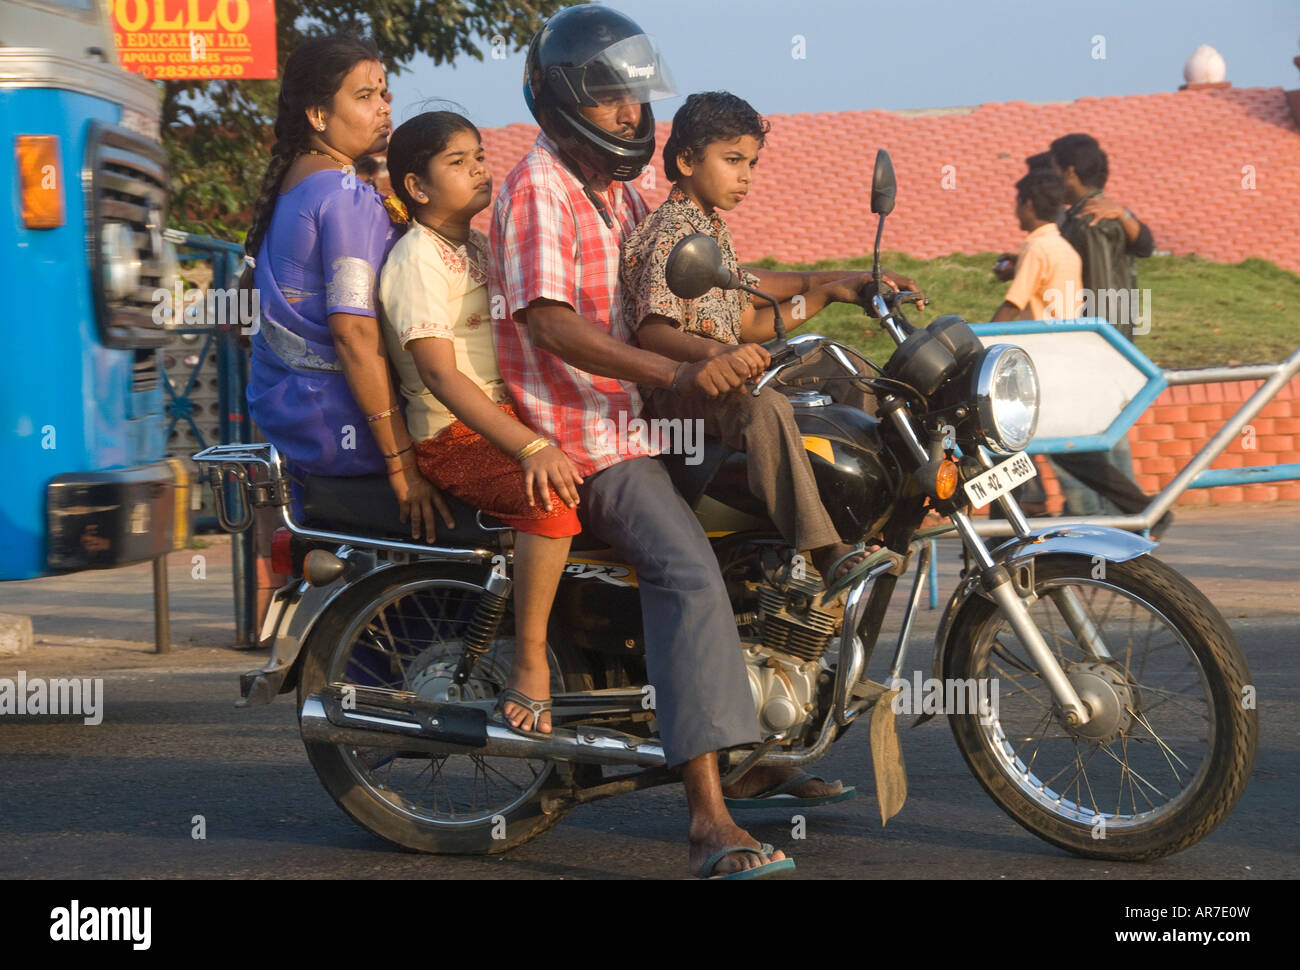 Une famille indienne sur une moto en Inde. Ratan Tata a dit avoir vu ensemble familles sur un vélo a été son inspiration pour le Nano Banque D'Images